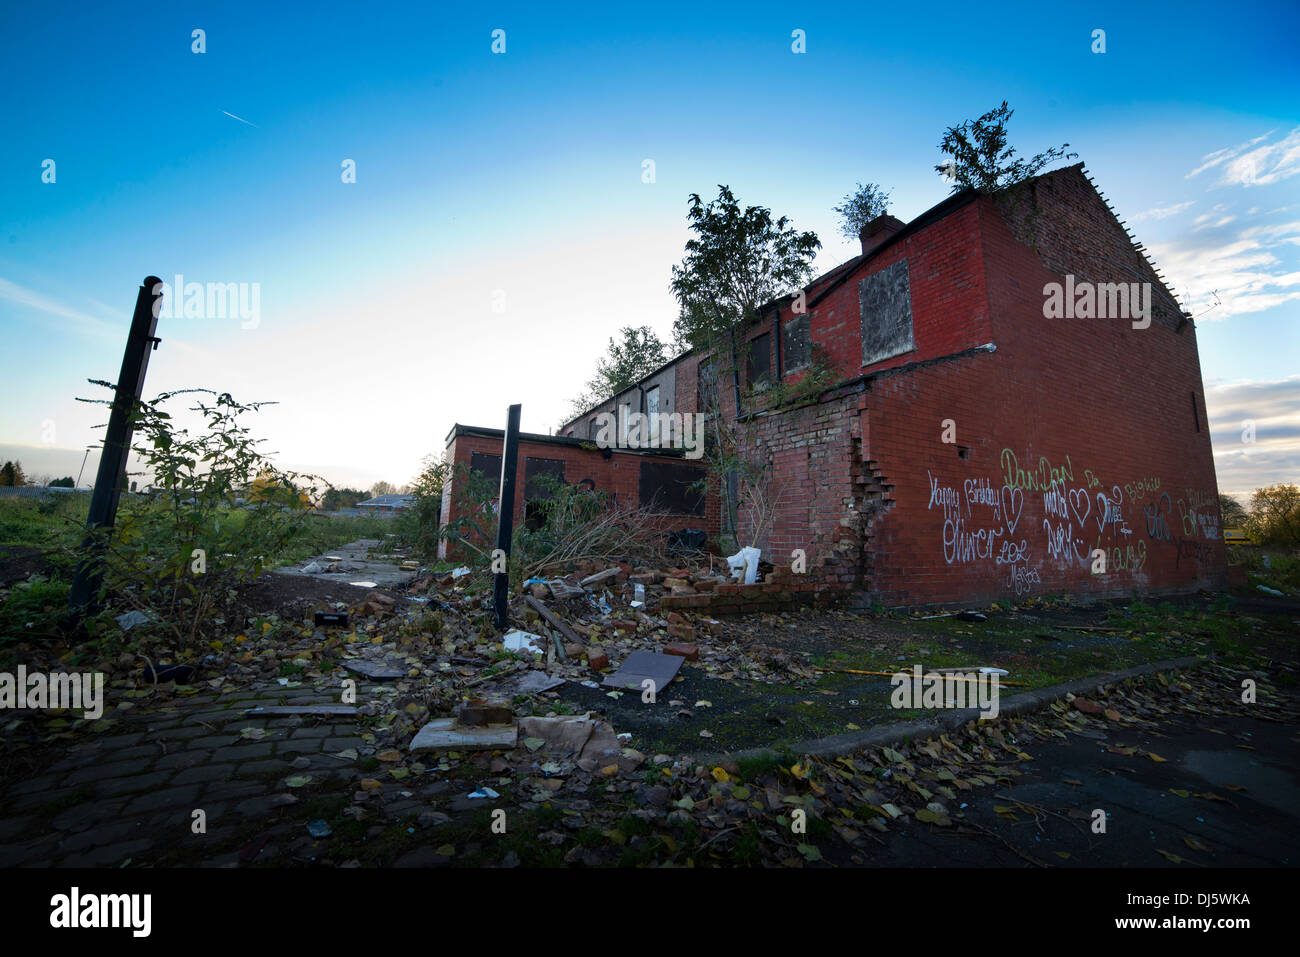 Verlassener Häuser warten auf Abbruch, städtische Erneuerung und Regeneration. Stockfoto